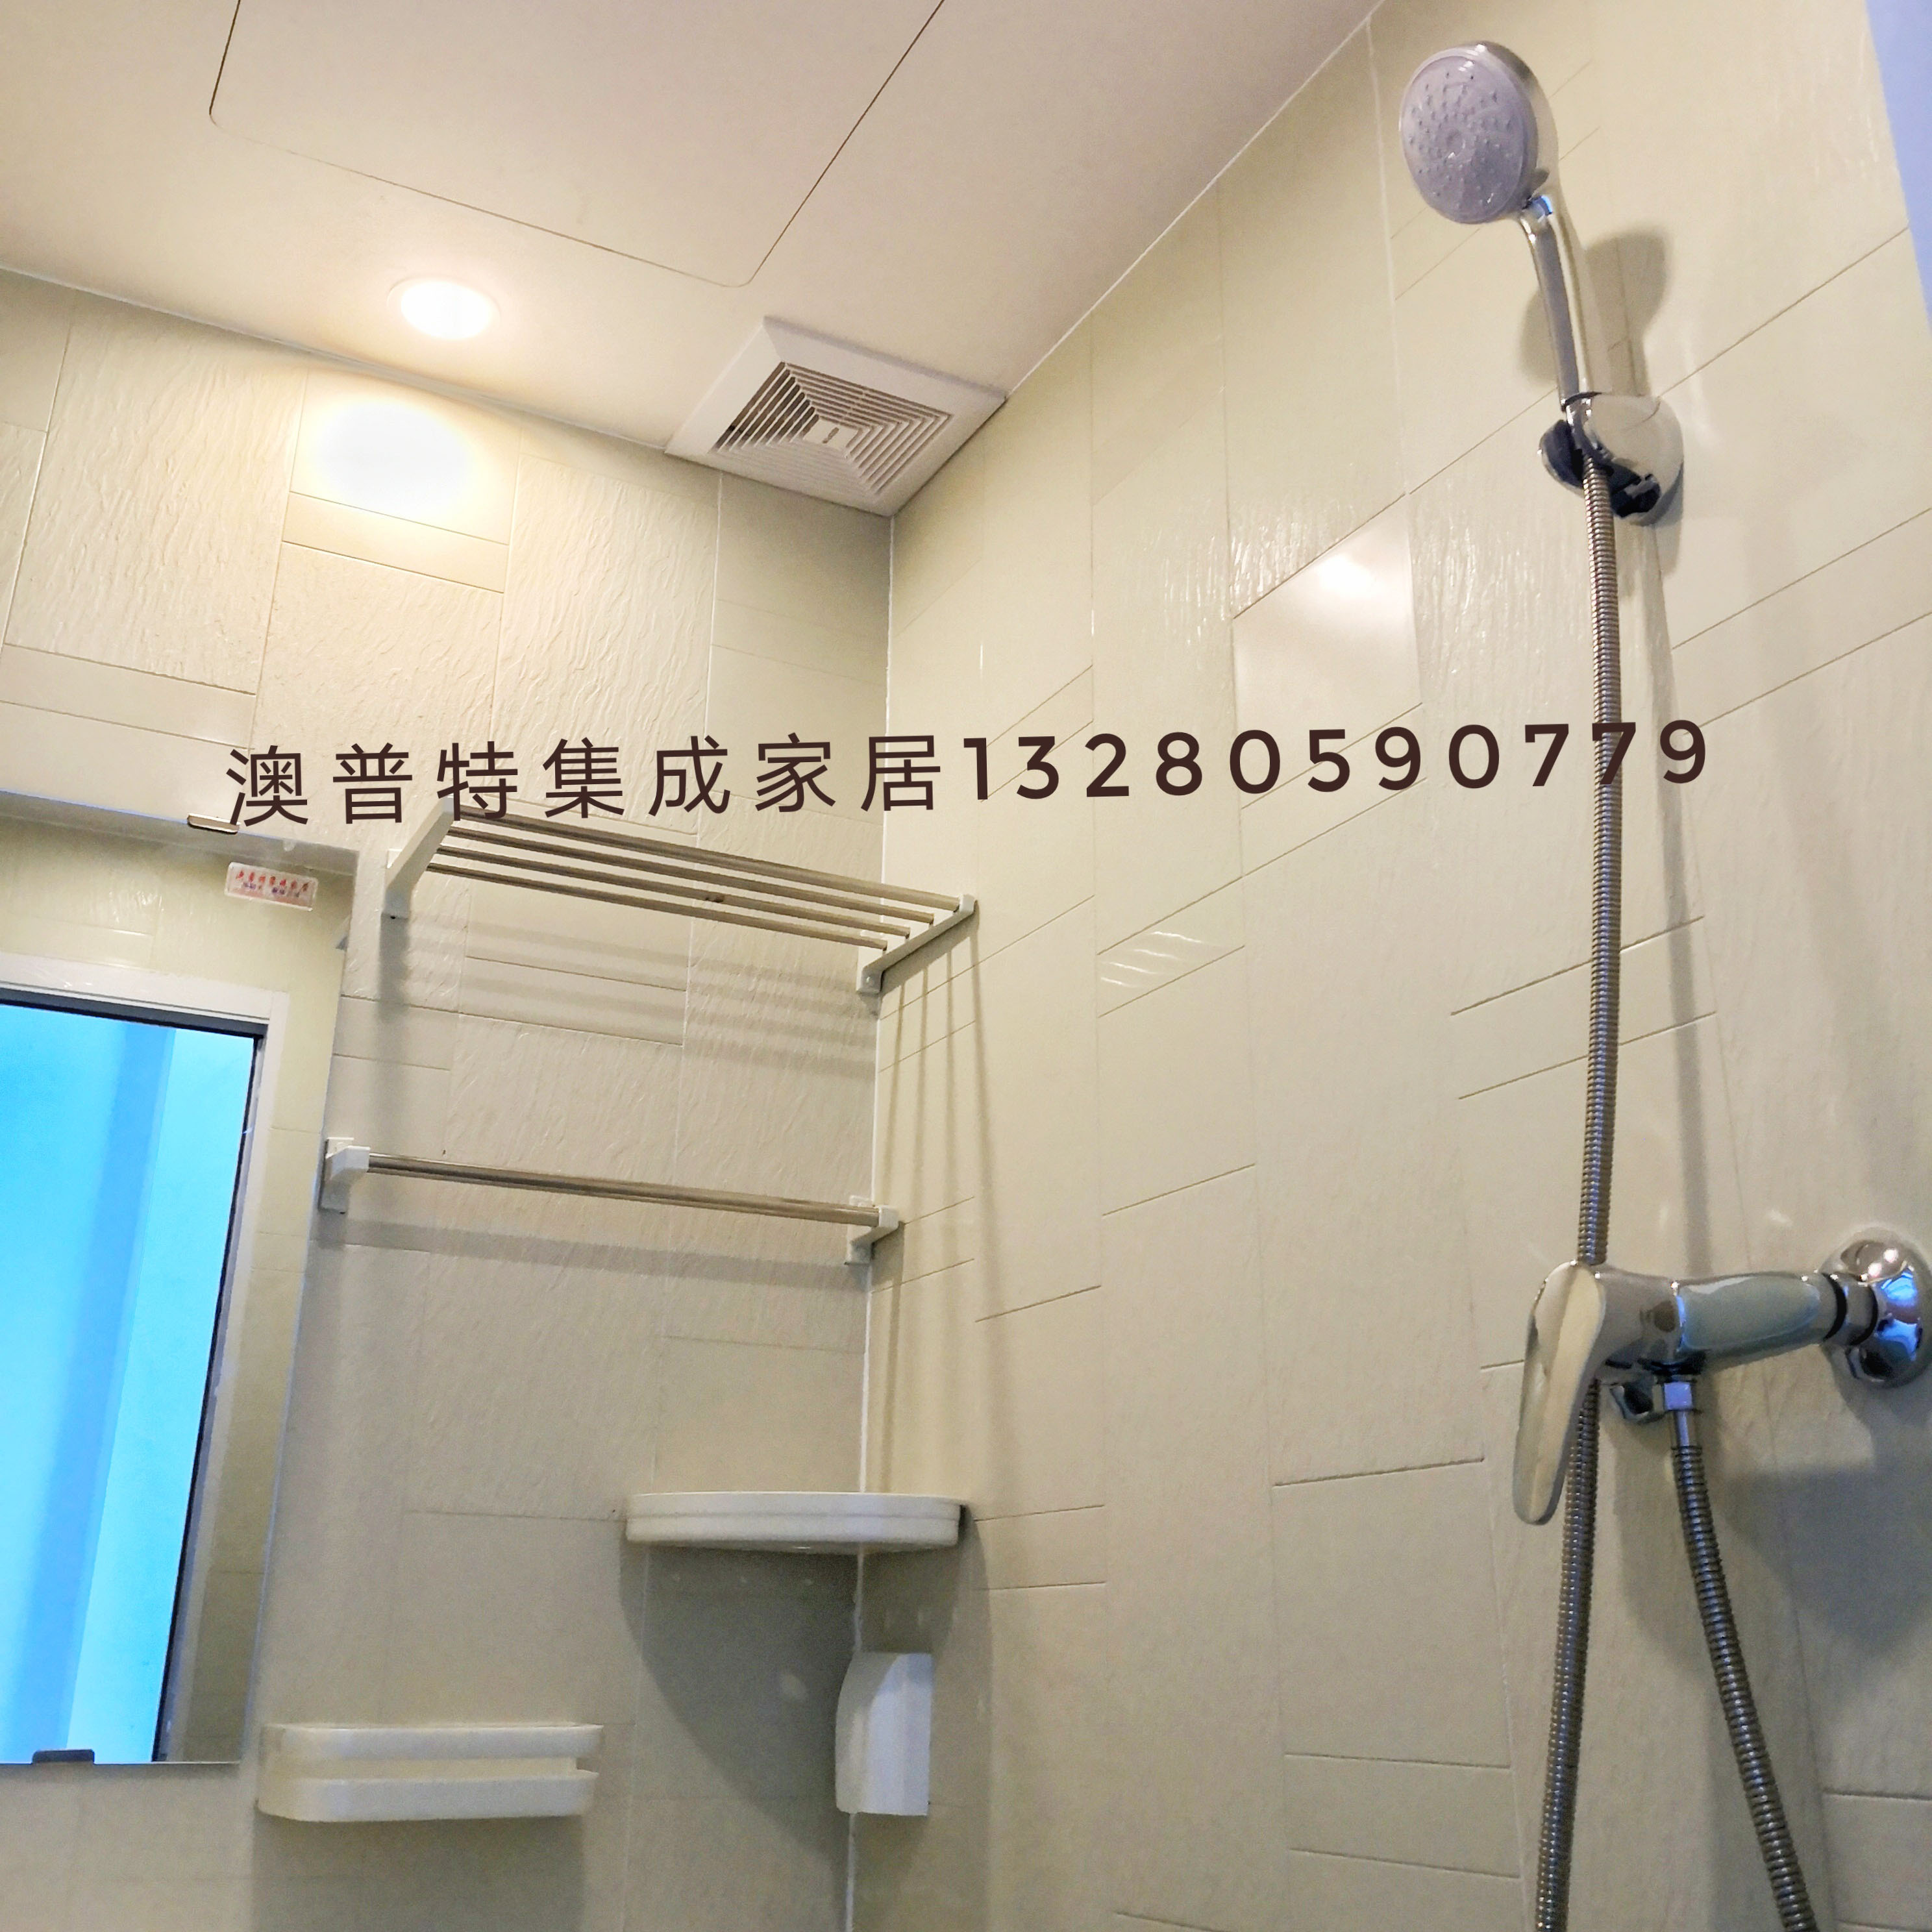 一体式整体卫生间 装配式整体卫生间 临沂澳普特集成家居 整体淋浴房 生产厂家图片